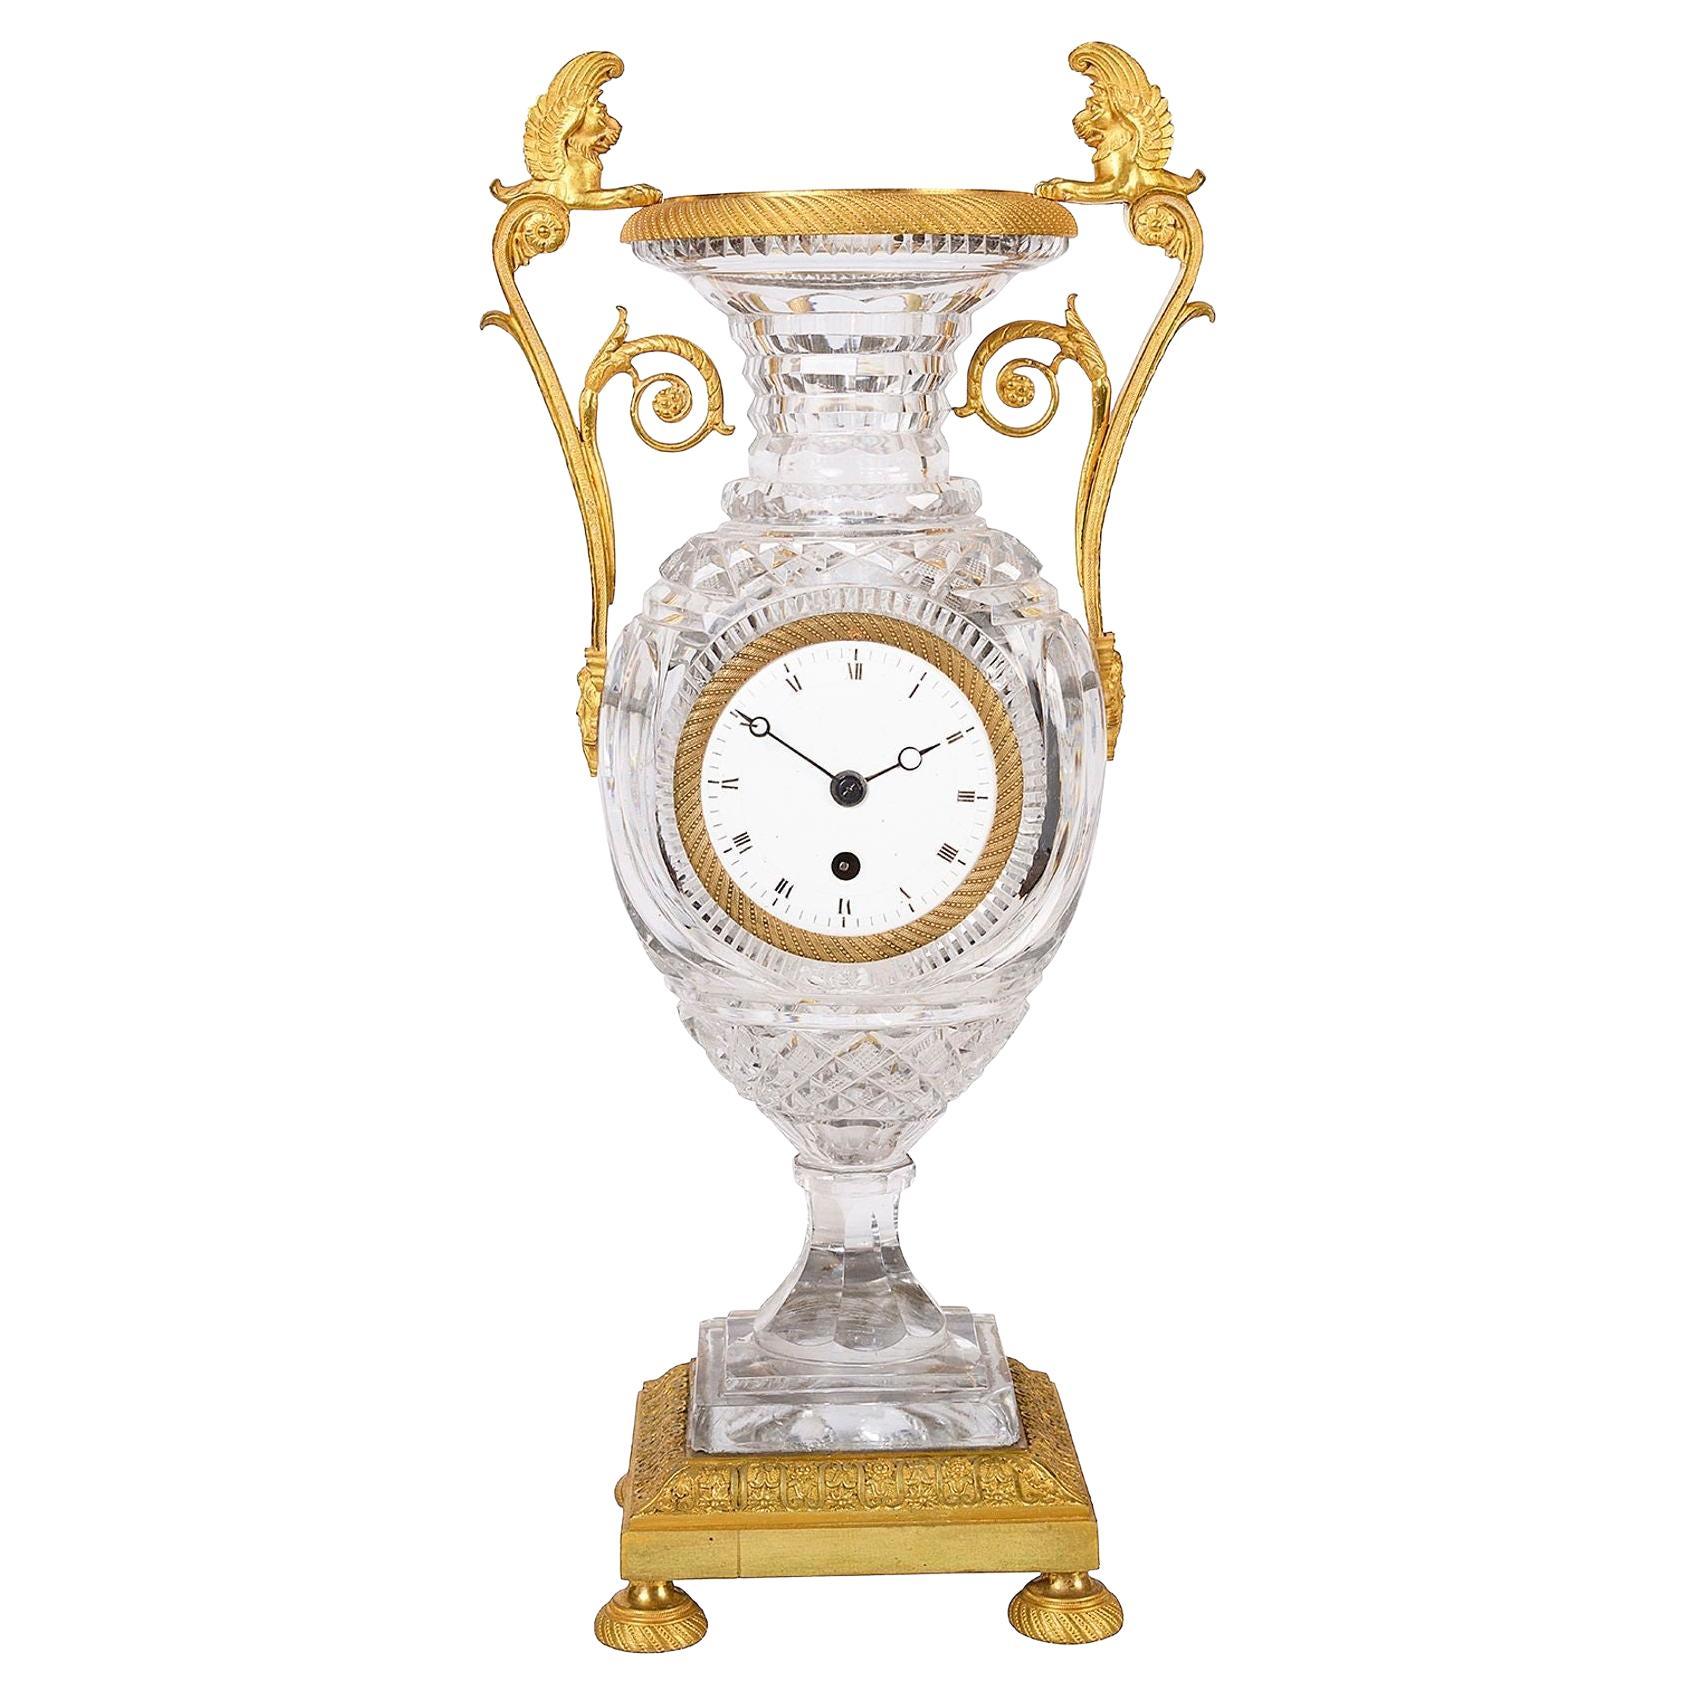 Horloge vase en cristal de style Empire français de Baccarat de qualité supérieure, datant d'environ 1860